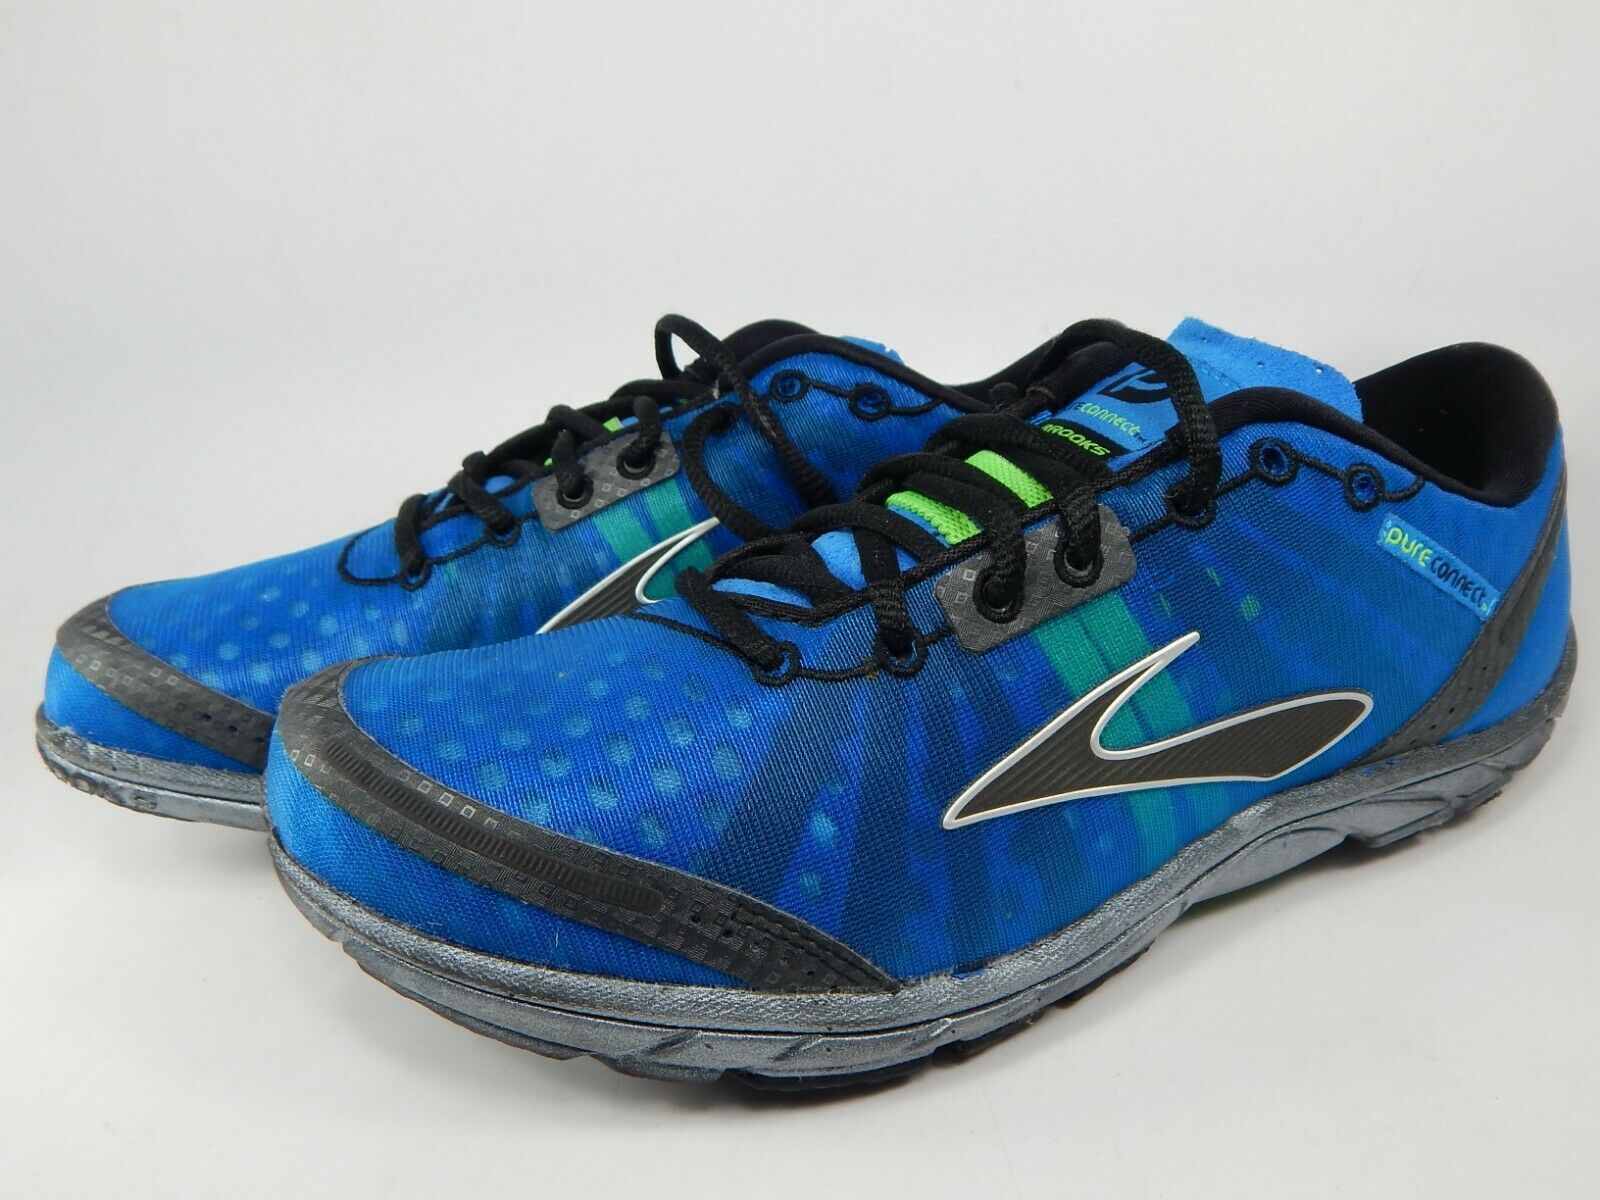 Brooks Pure Connect Size US 8 M (D) EU 41 Men's Running Shoes Blue ...